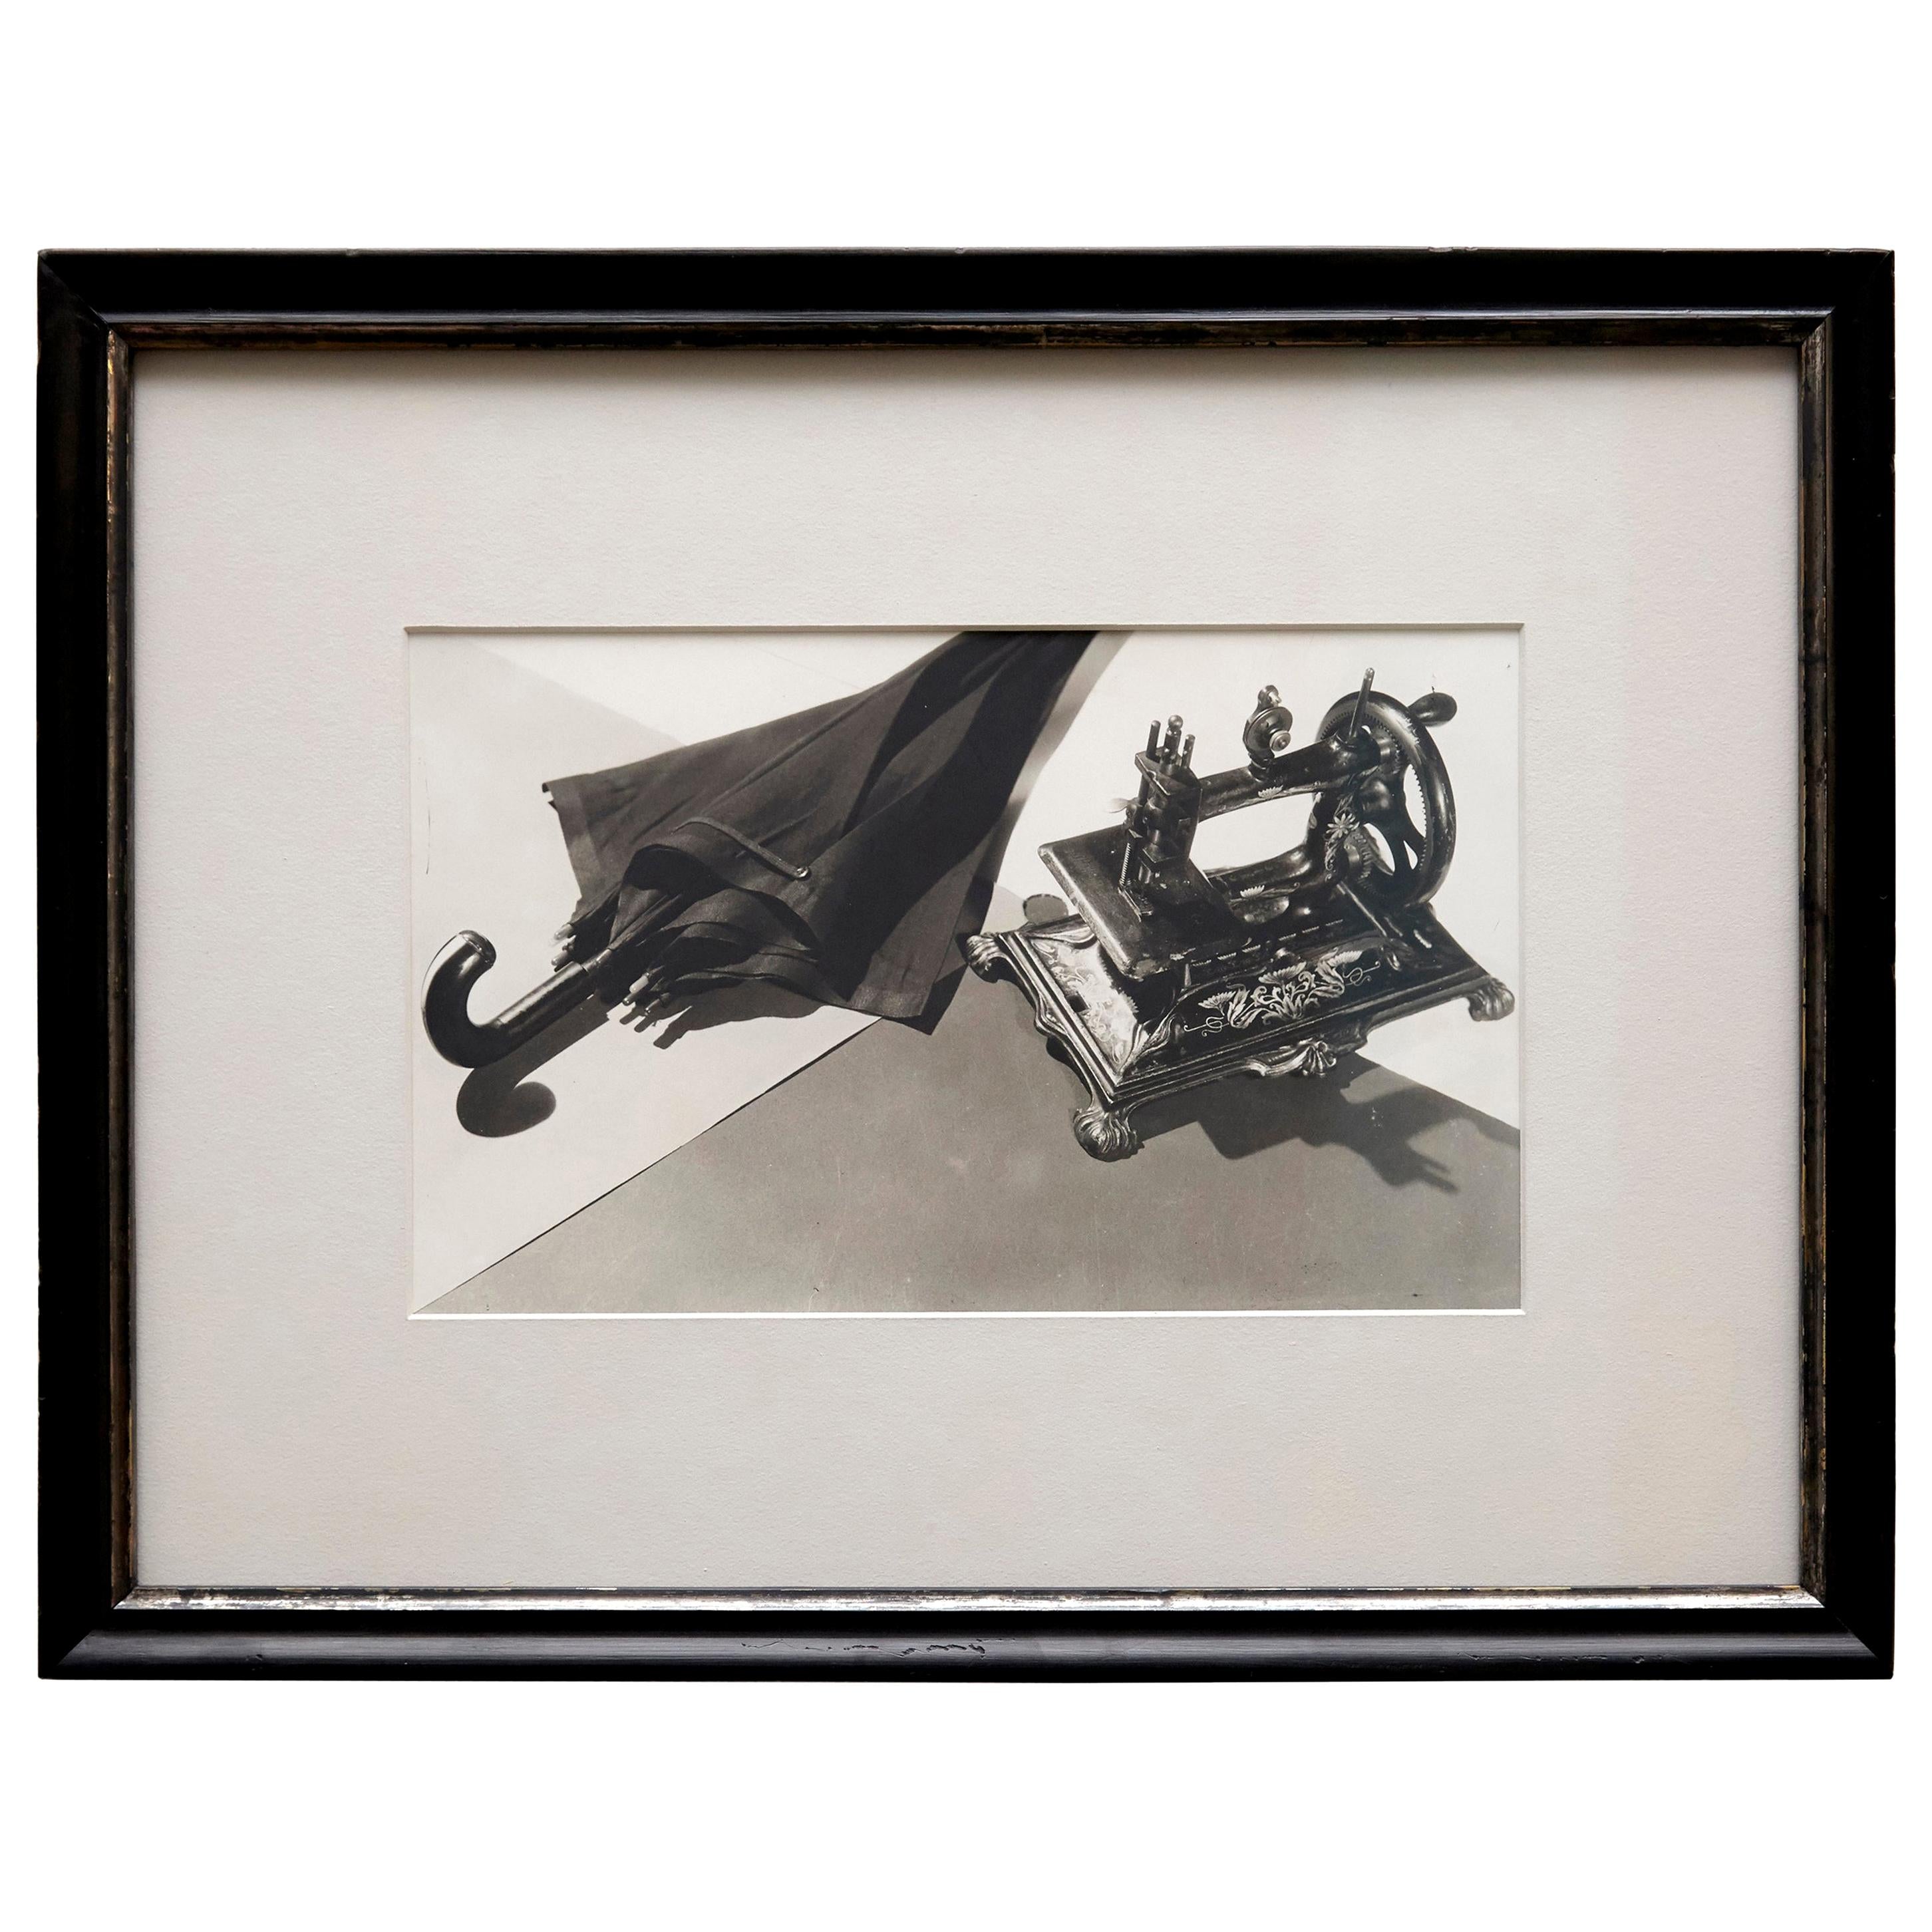 Man Ray Photographie surréaliste en noir et blanc encadrée "Hommage à Lautréamont".